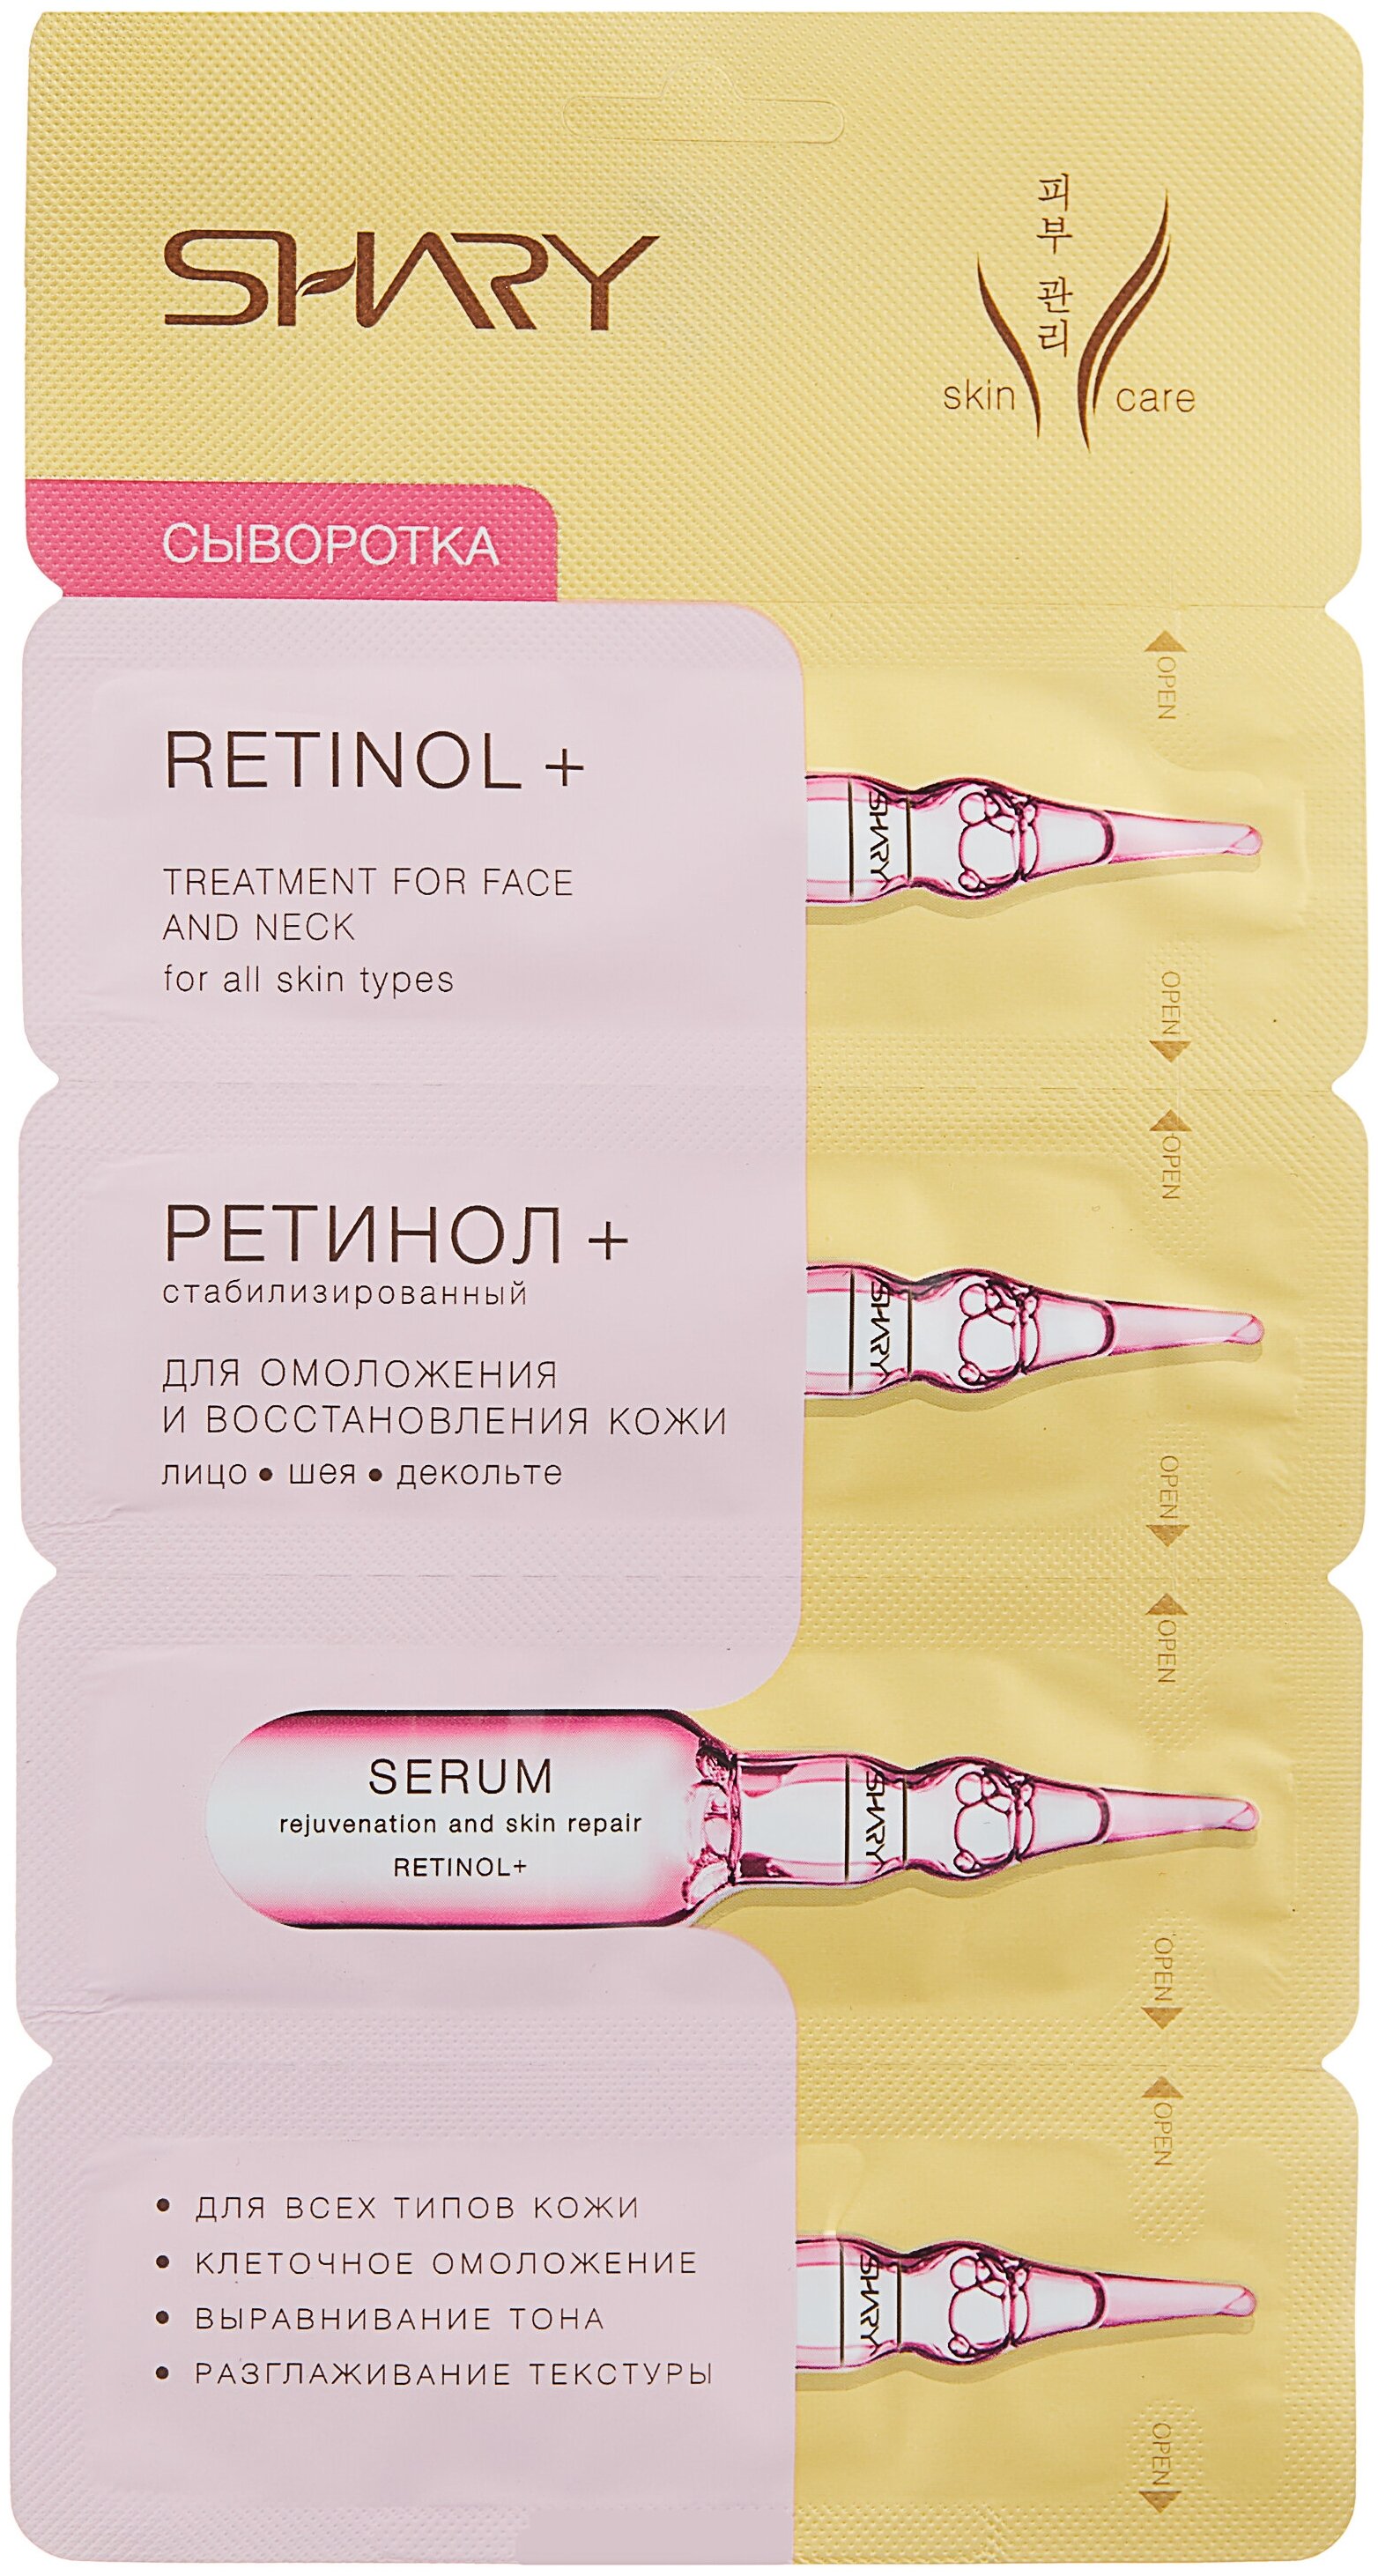 Shary Сыворотка "Ретинол+" для омоложения и восстановления кожи, 8г